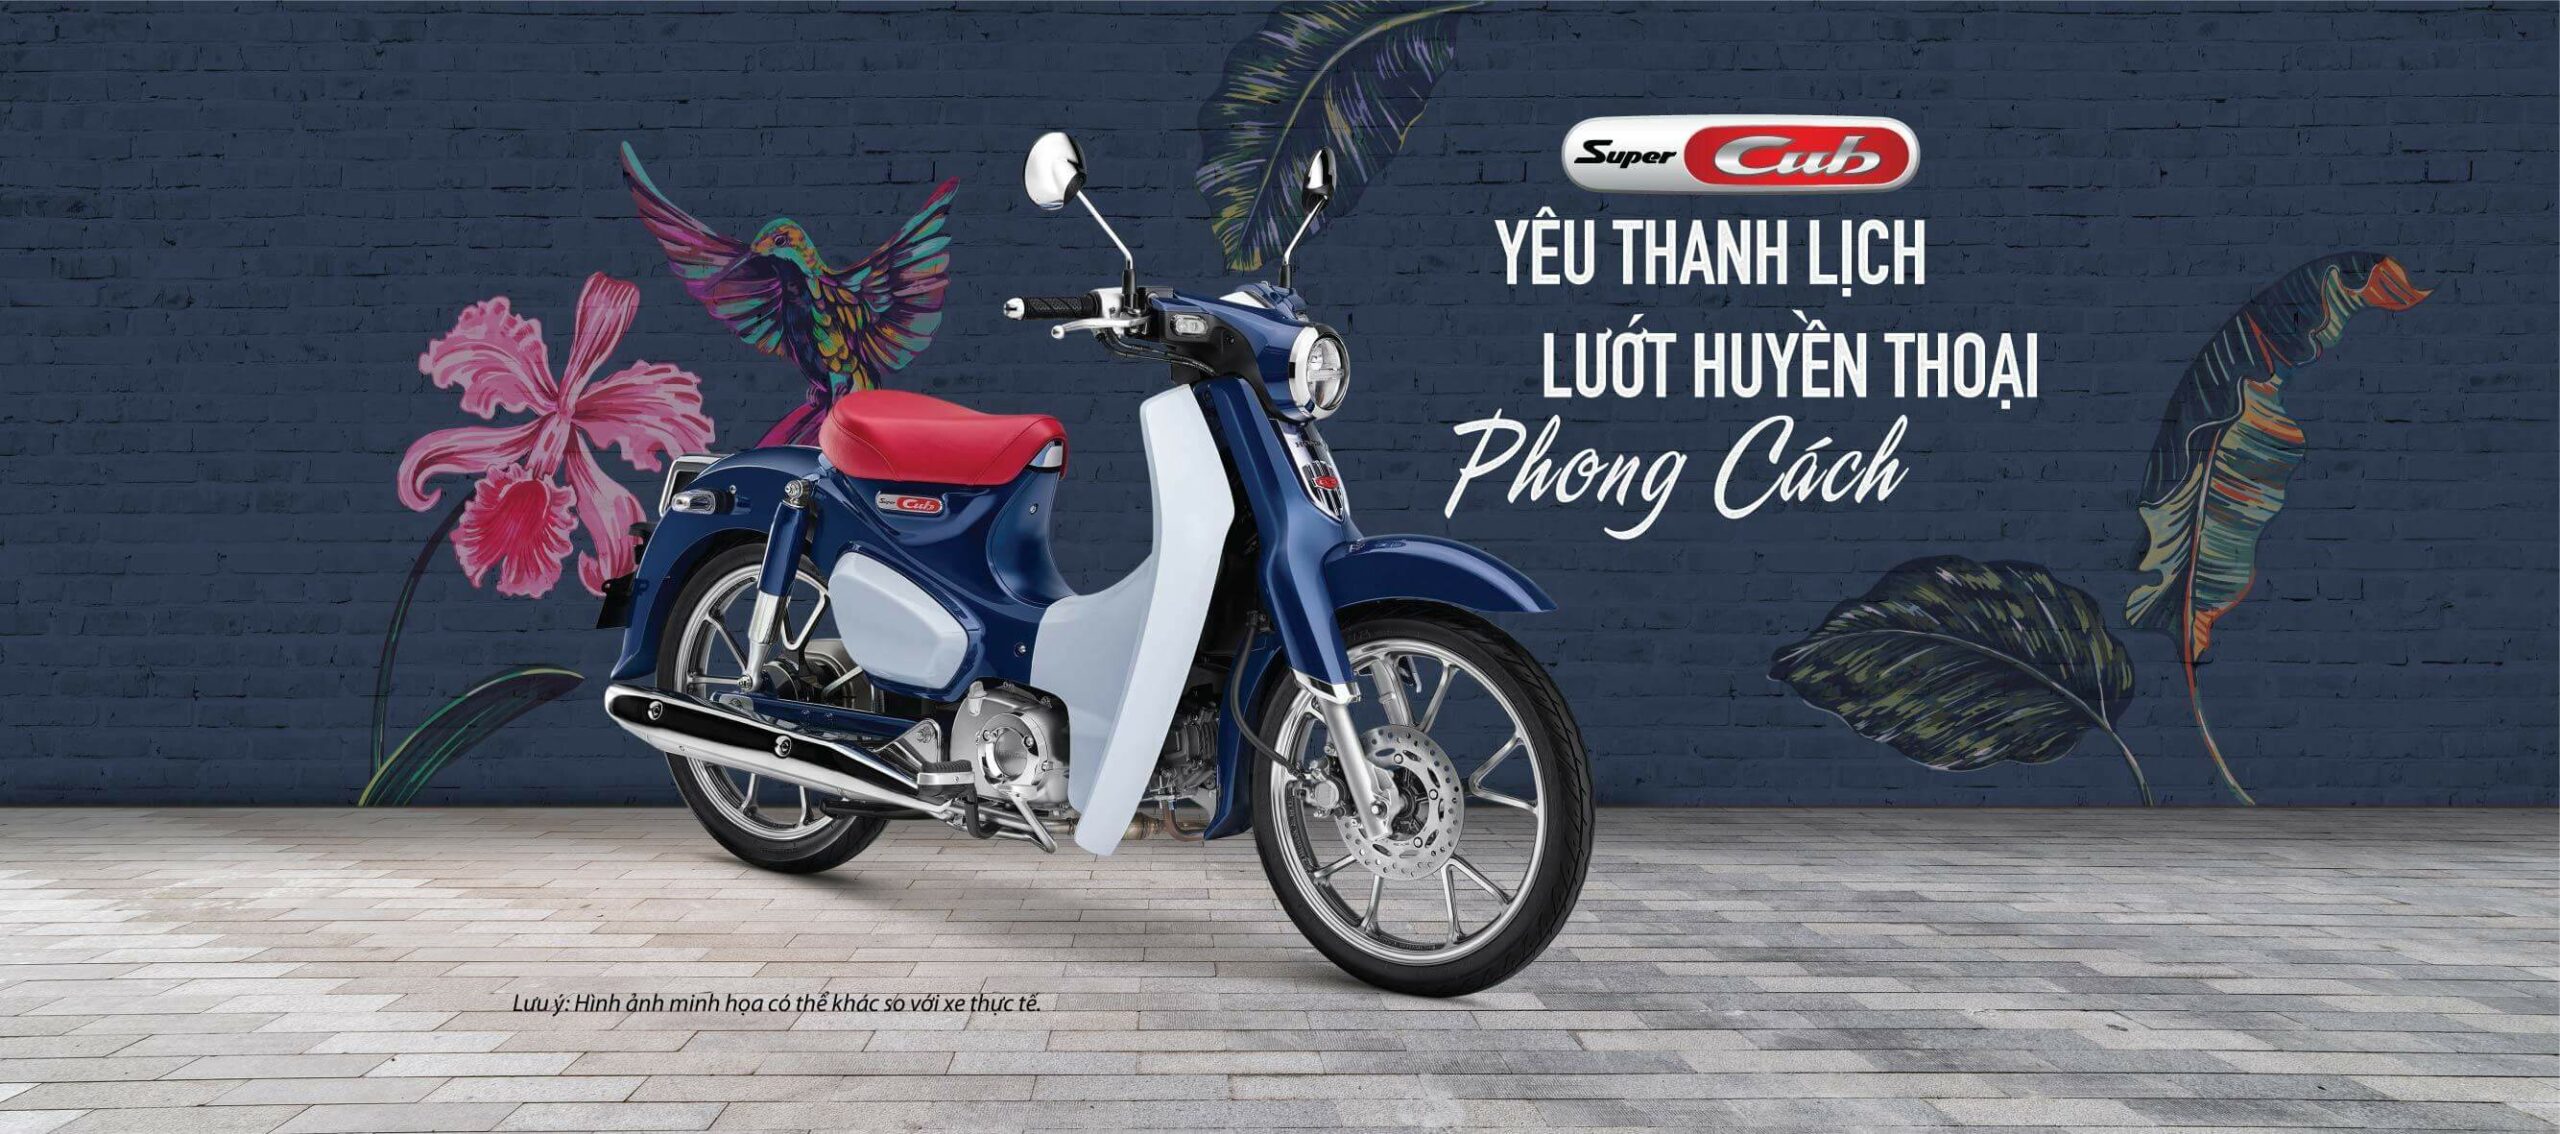 Honda Super Cub C125 2021 bán tại Thái Lan rẻ hơn ở Việt Nam  YouTube